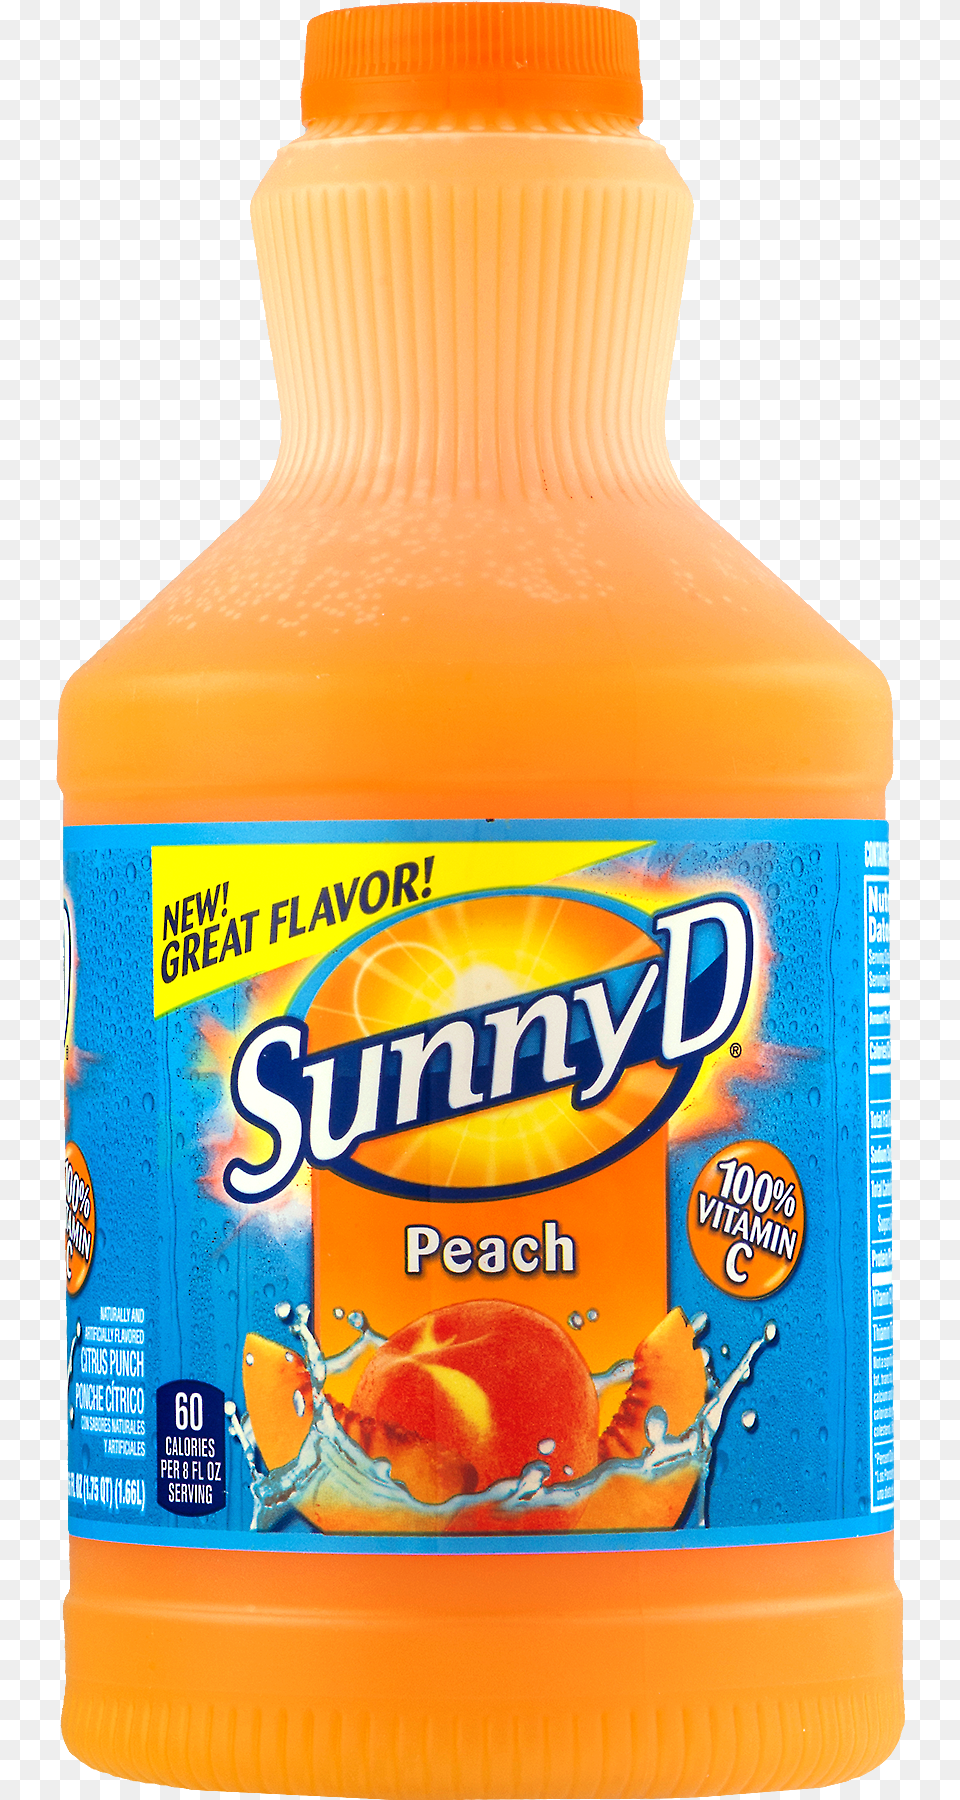 Sunny D Flavored Citrus Punch Orange Sunnyd Logo, Beverage, Juice, Orange Juice, Can Free Transparent Png